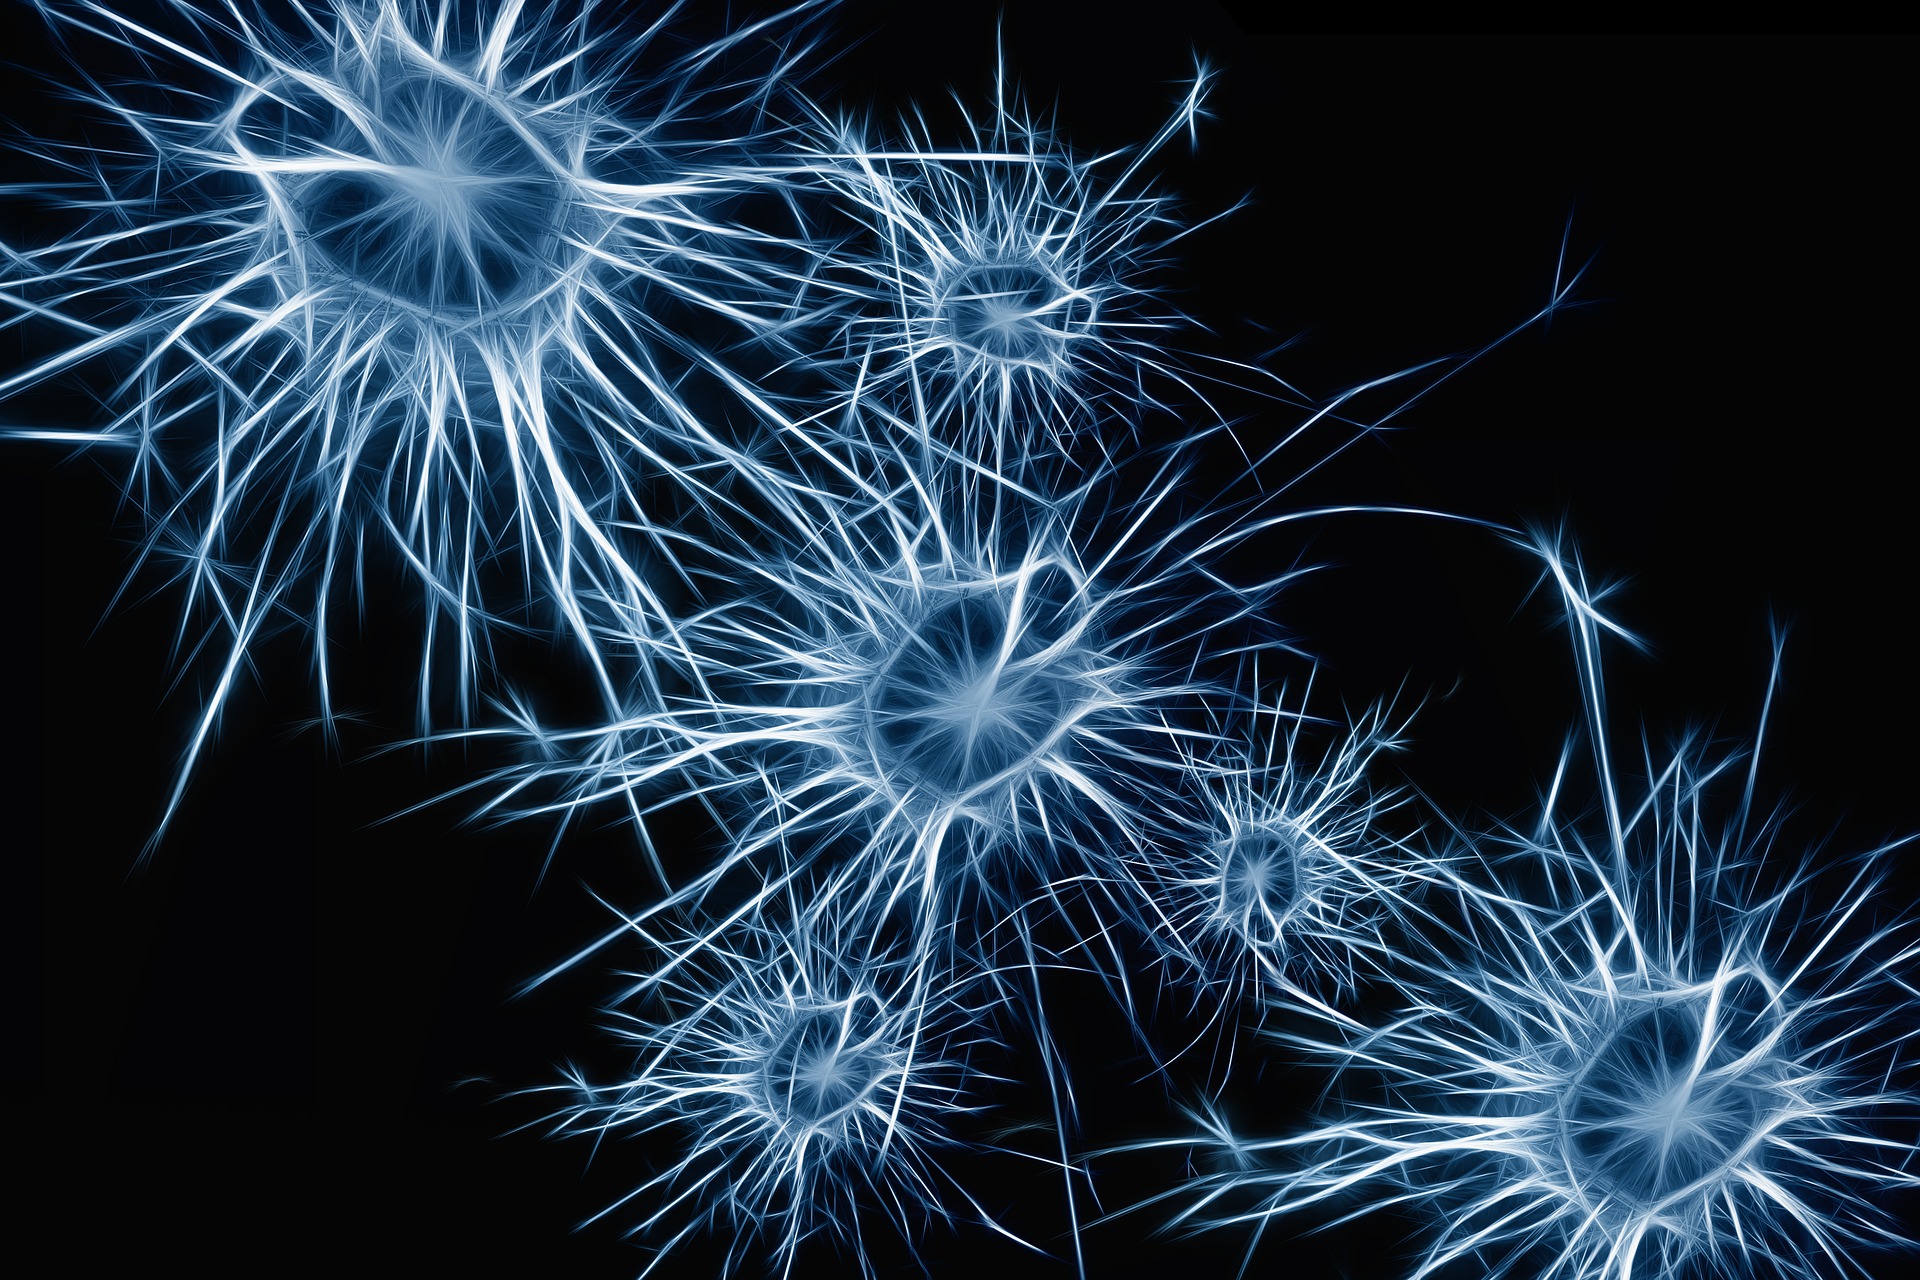 rendering of neurons